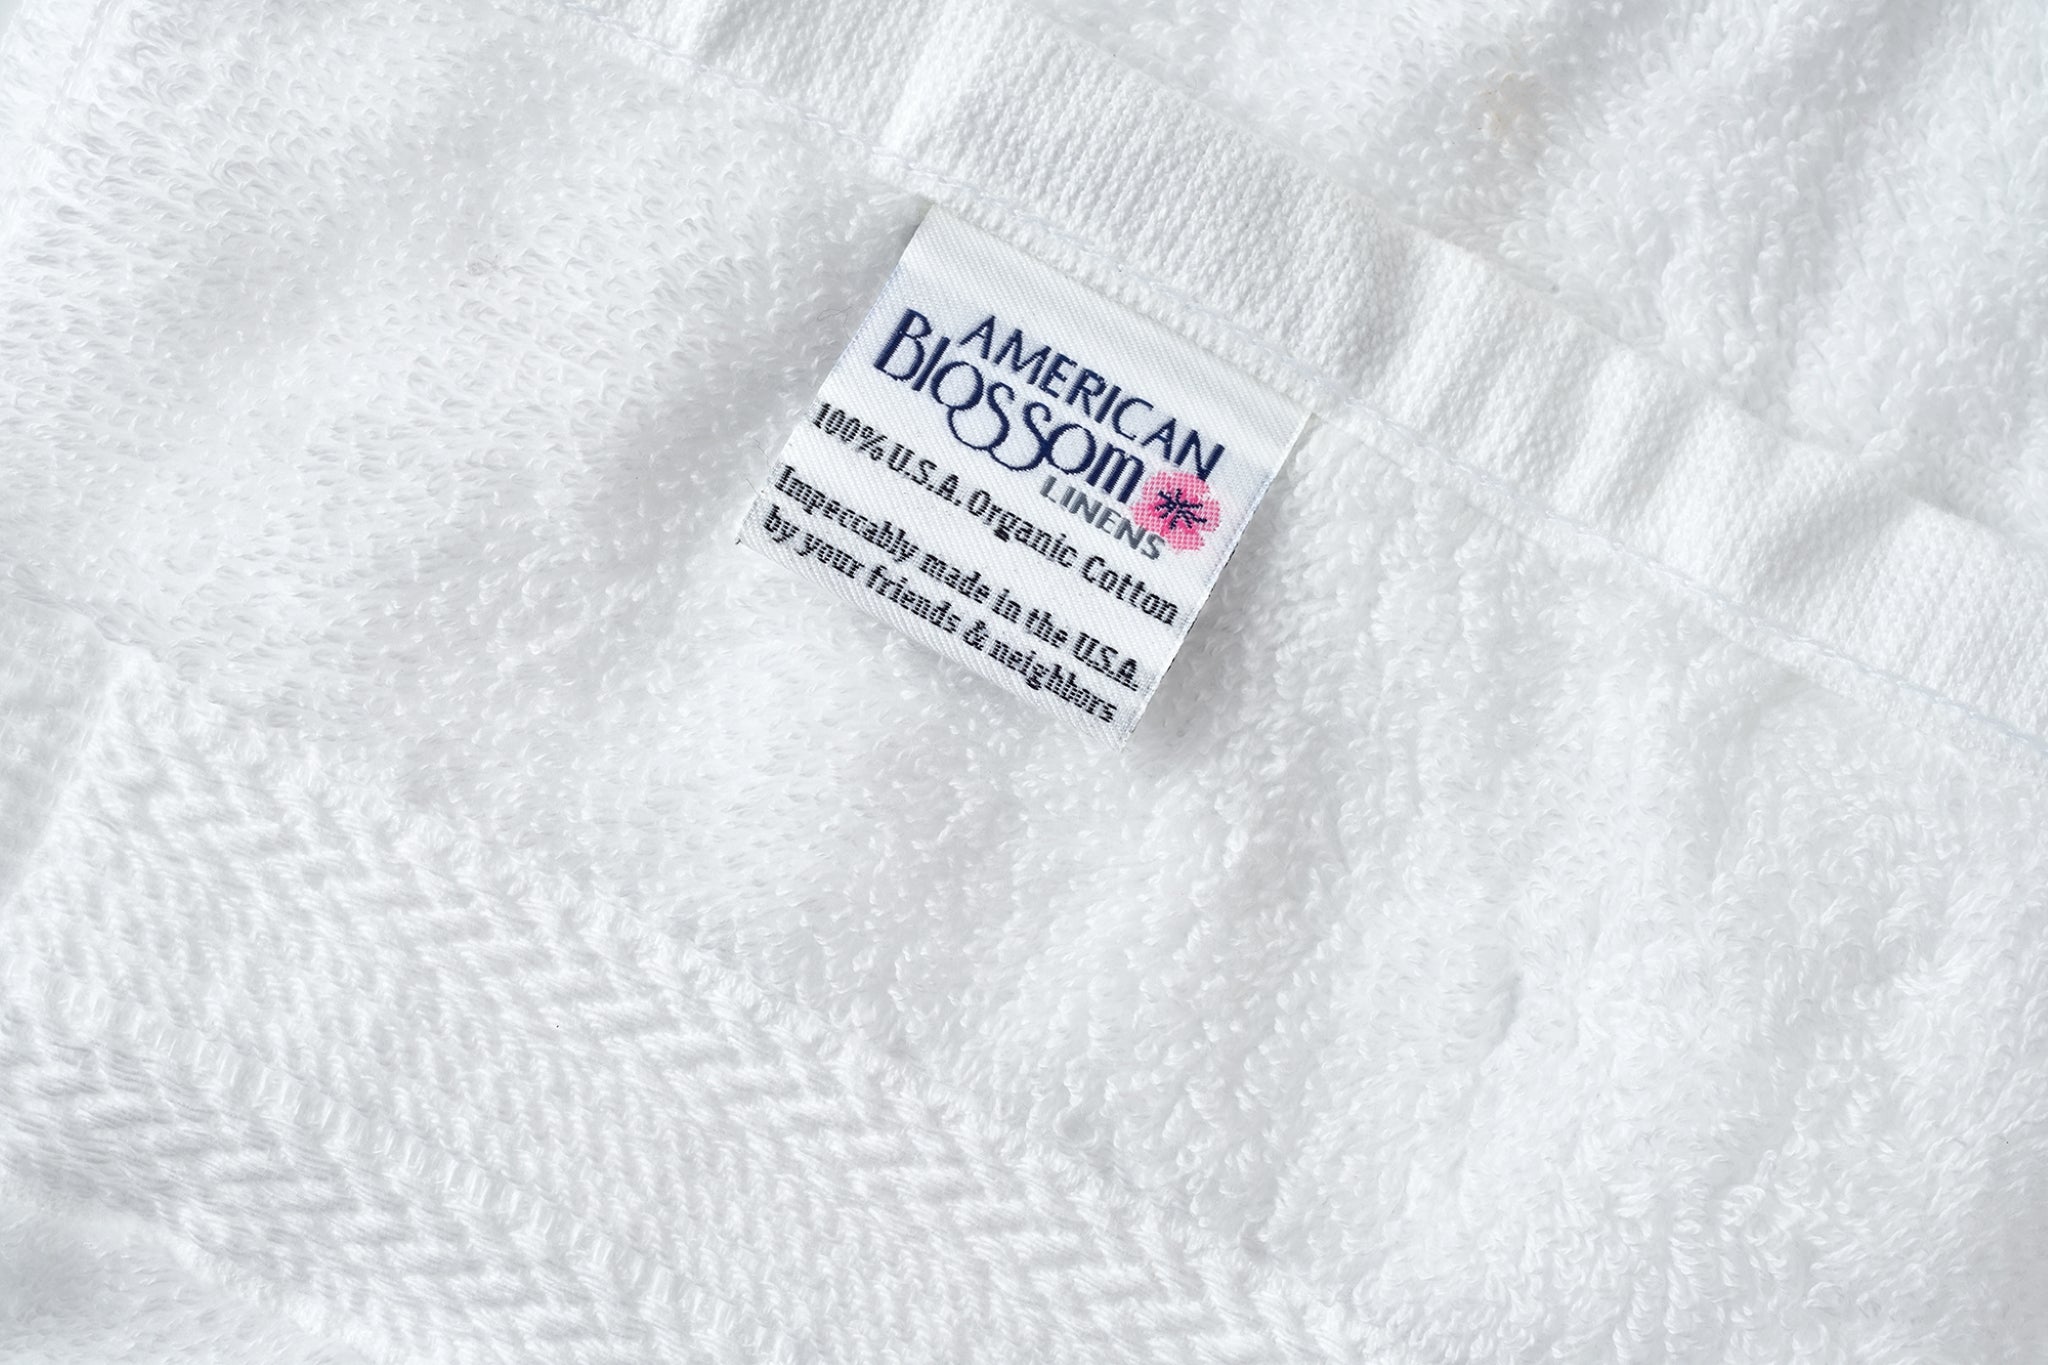 White Classic Luxury 8 Piece Bath Towel Set - 700 GSM Cotton Towels - 2  Bath